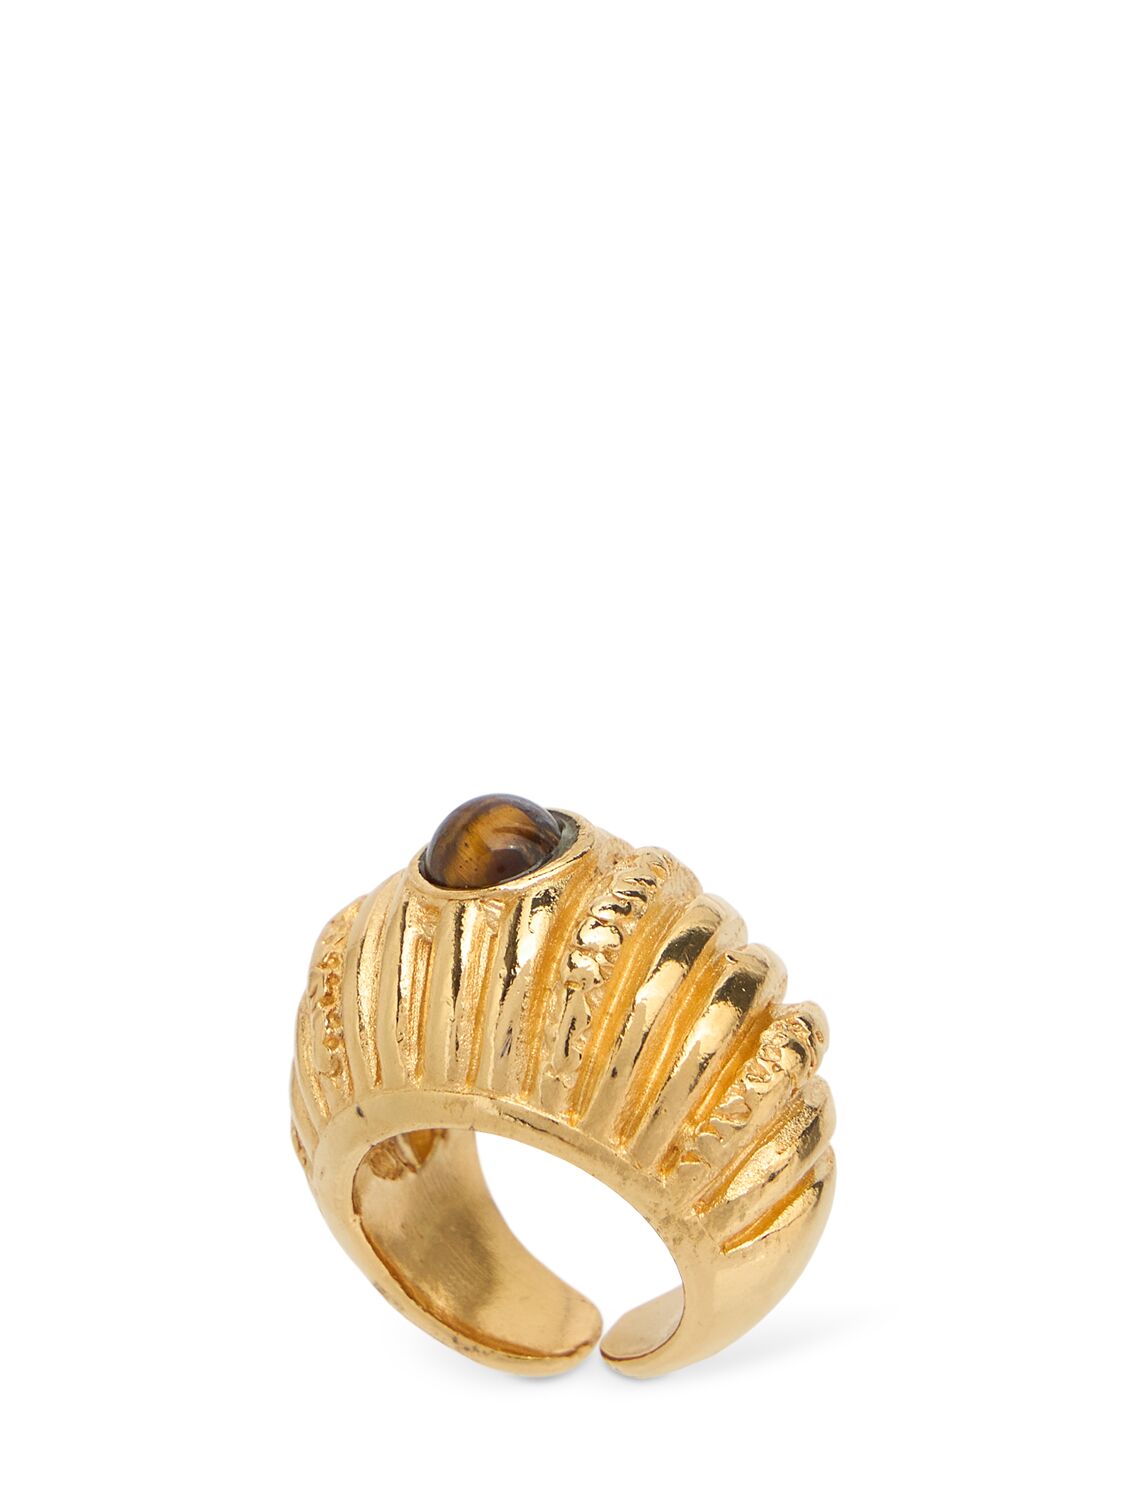 Paola Sighinolfi Small Reef Chunky Ring In Gold/tigereye